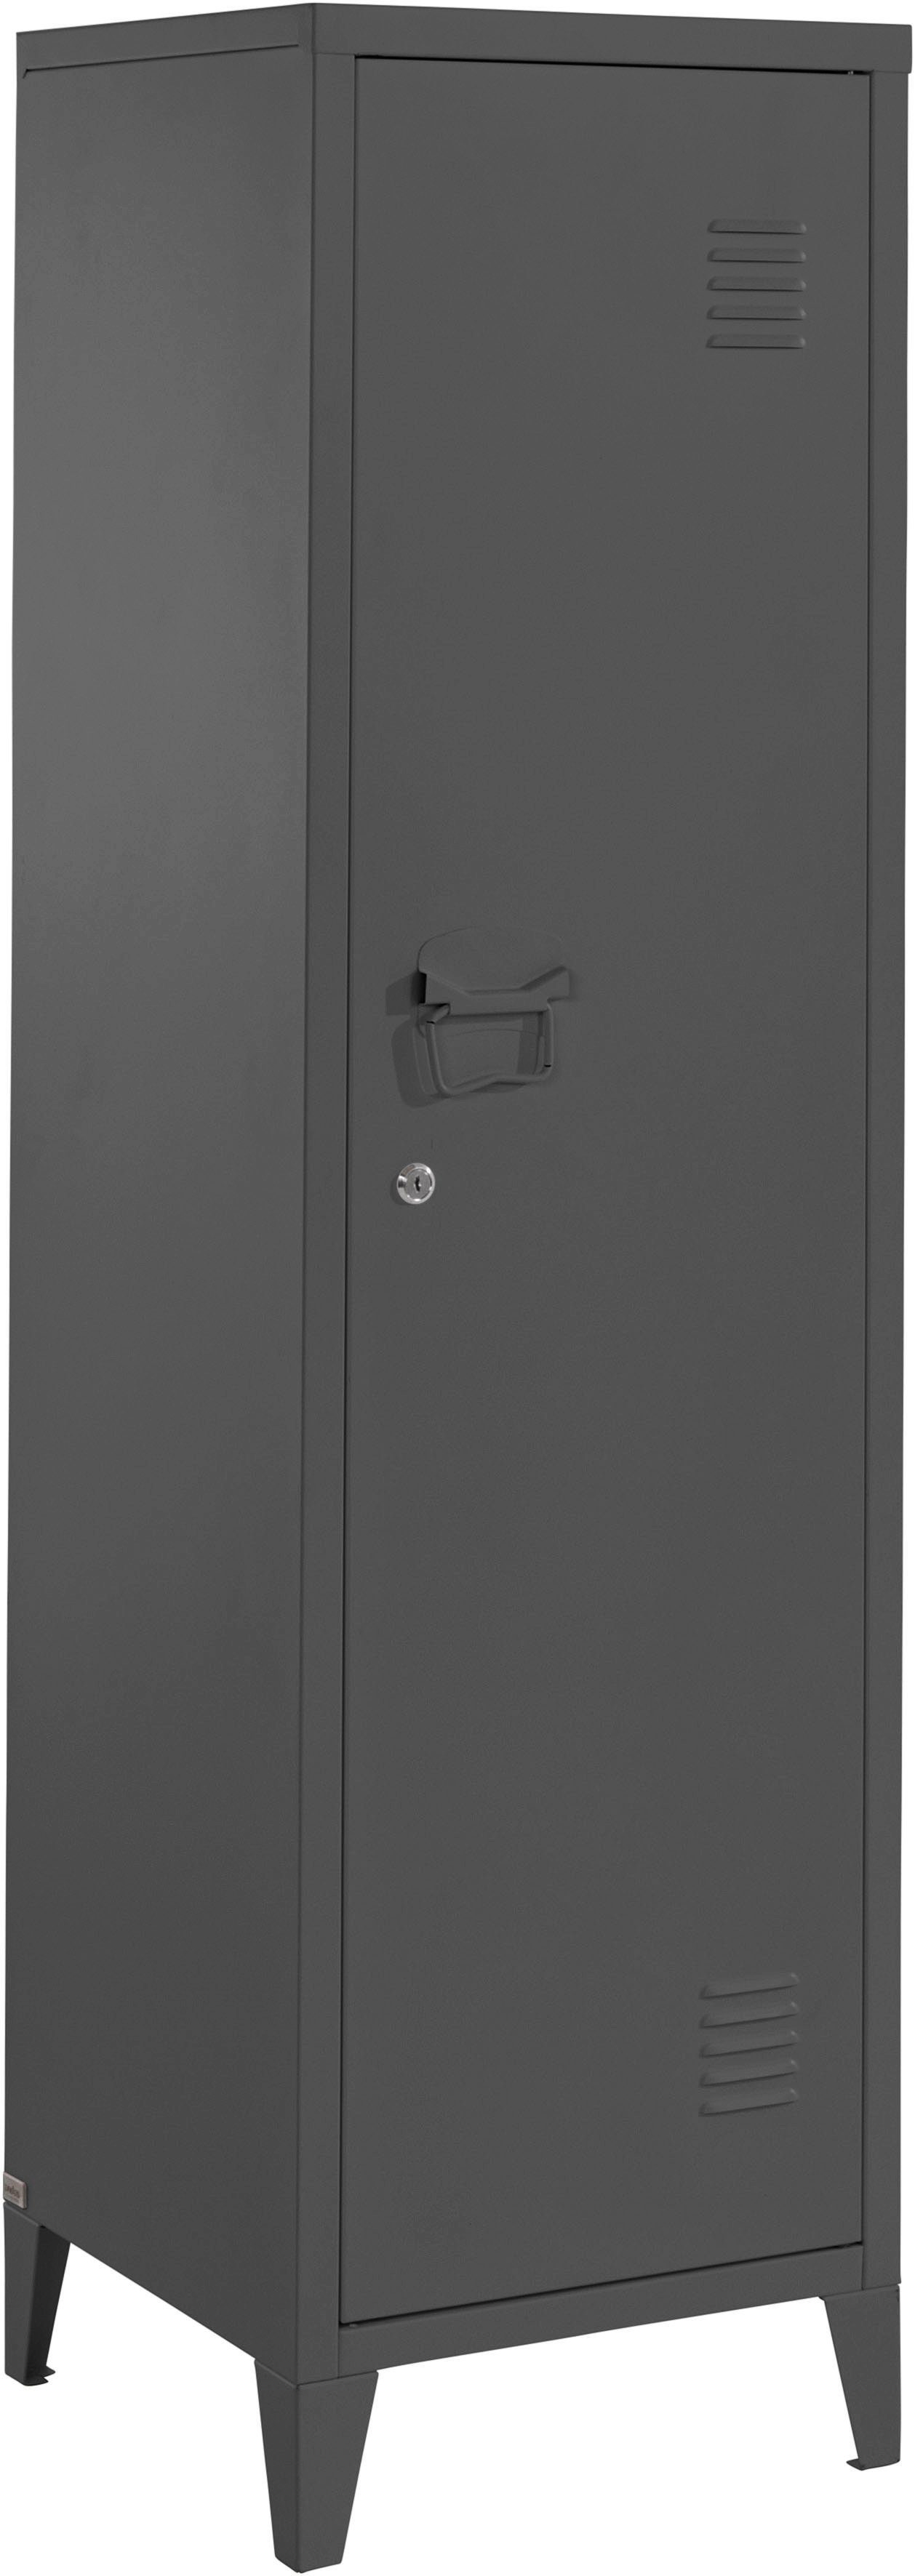 andas Midischrank Jensjorg Midischrank aus Metall, 2 x Einlegeböden hinter der Tür, Höhe 137 cm schwarz